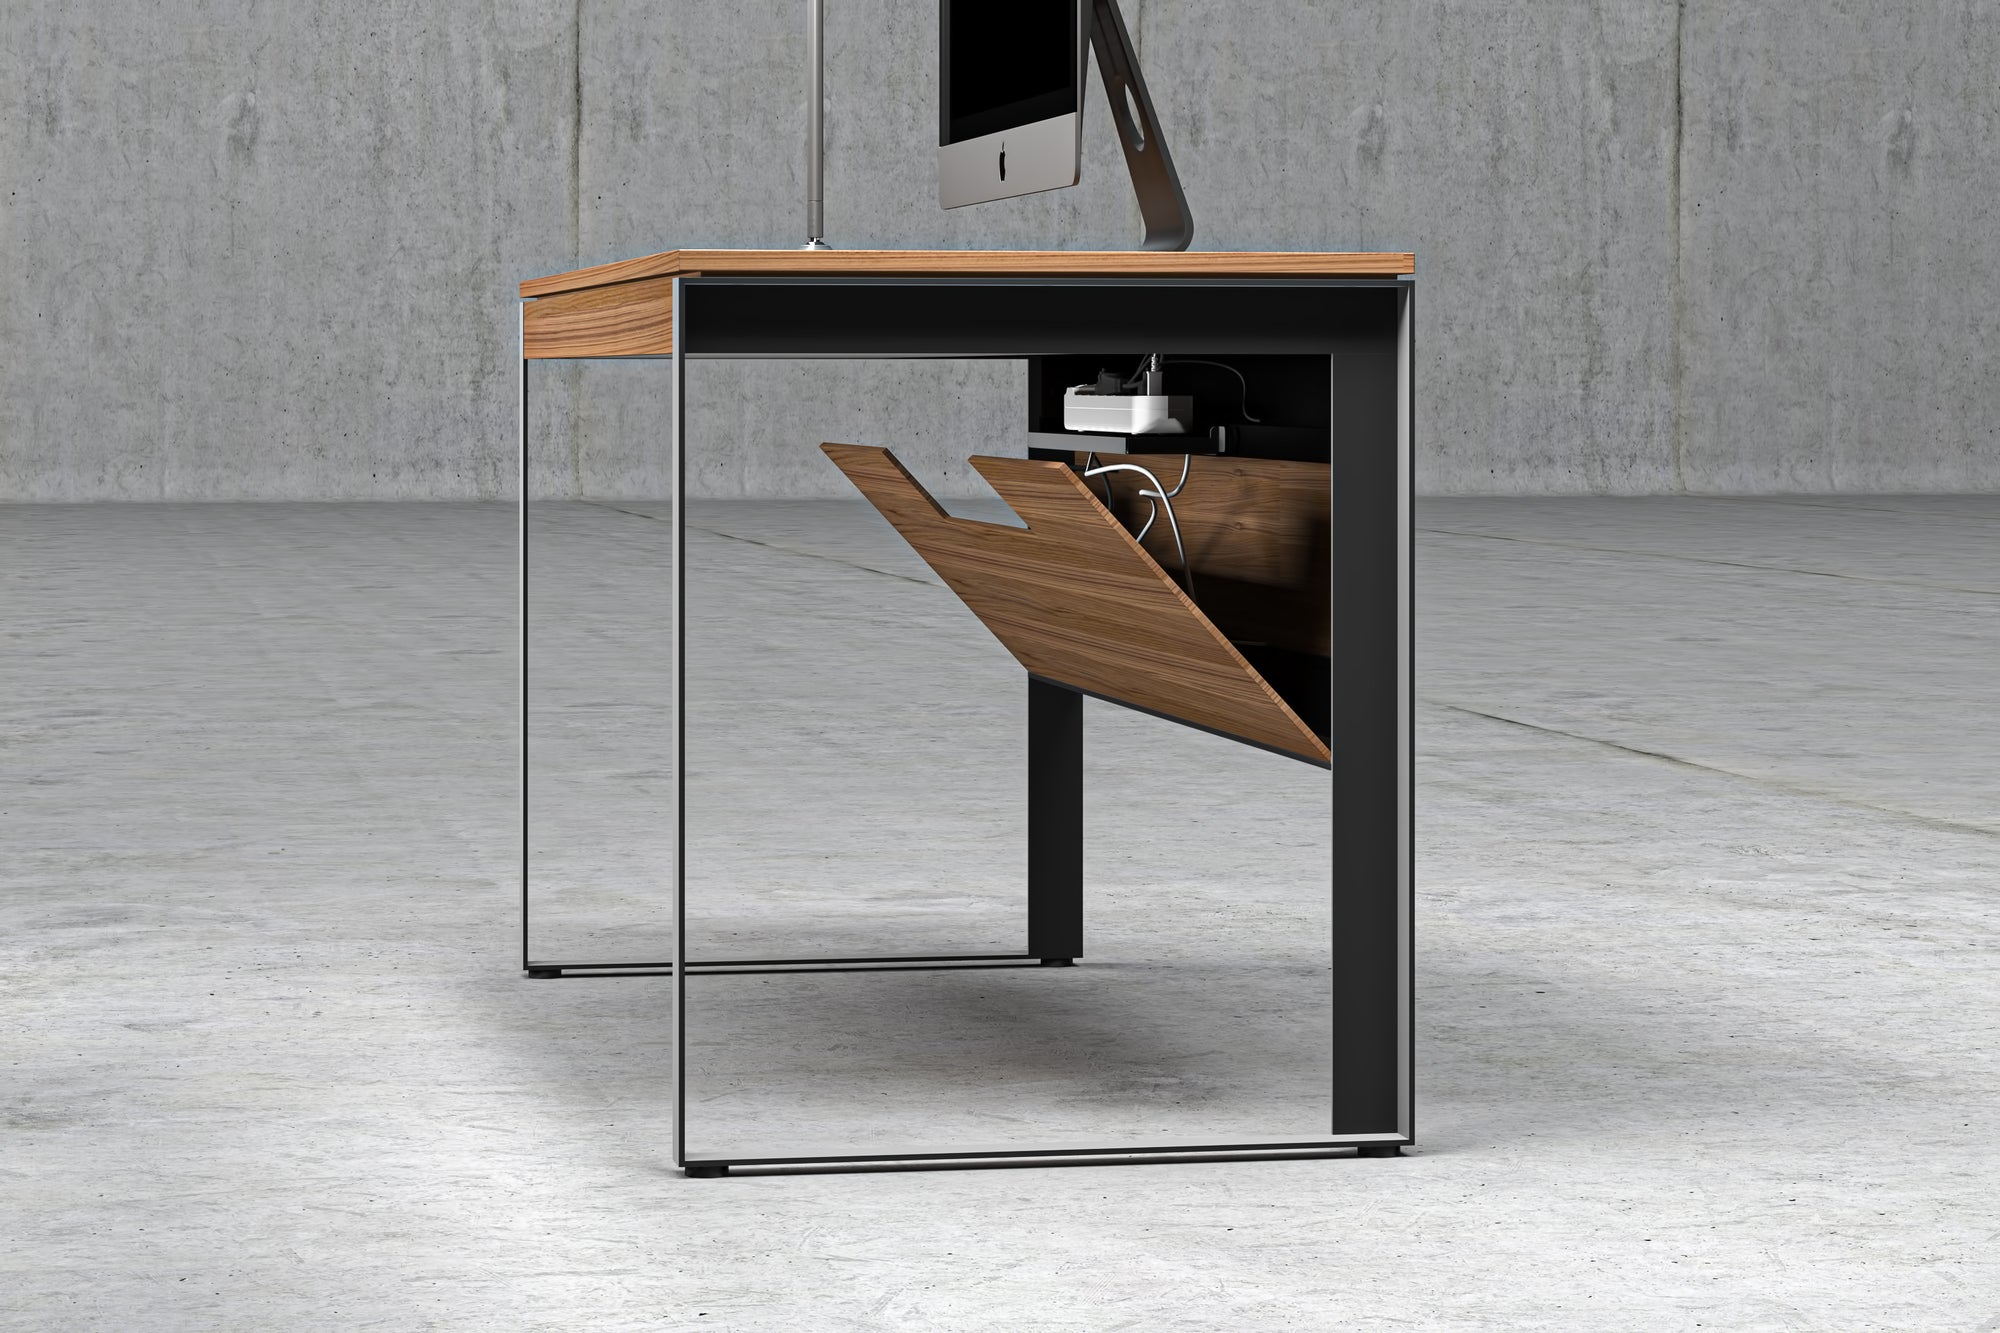 BDI Linea Office Desk - 2Modern